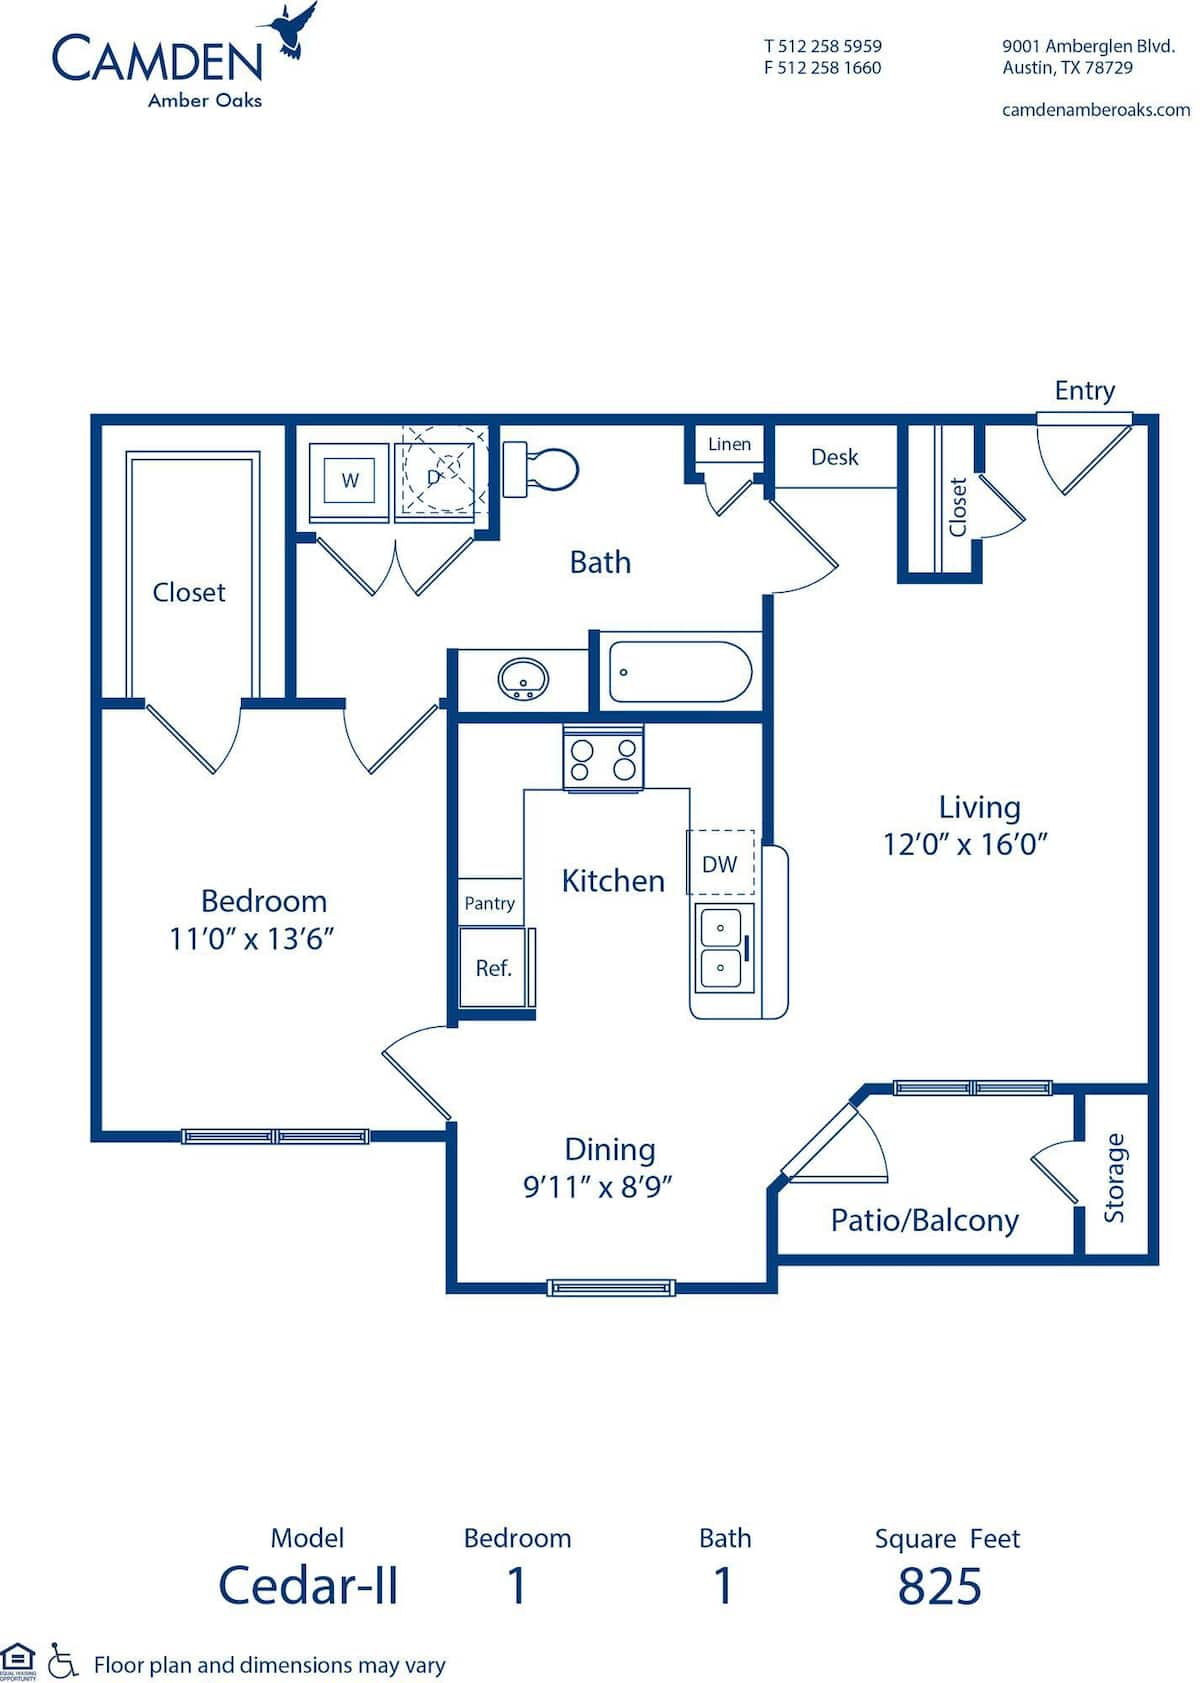 Floorplan diagram for Cedar - II, showing 1 bedroom